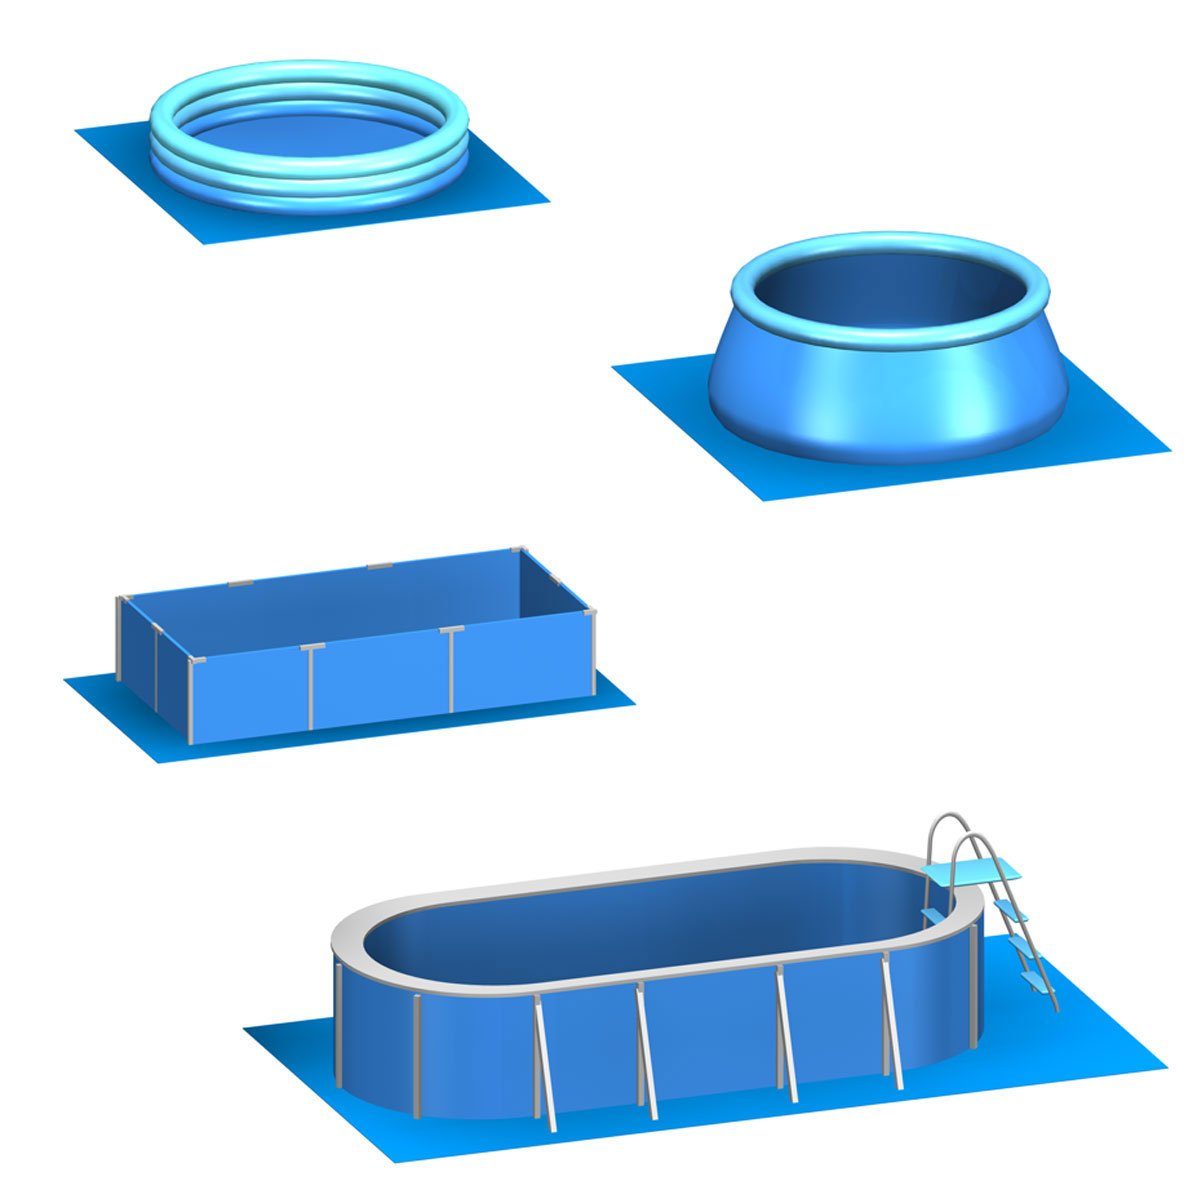 Poolunterlage erweiterbares Matten eyepower EVA Set, 13,1 56 m² 50x50 Stecksystem Blau Bodenmatte Pool